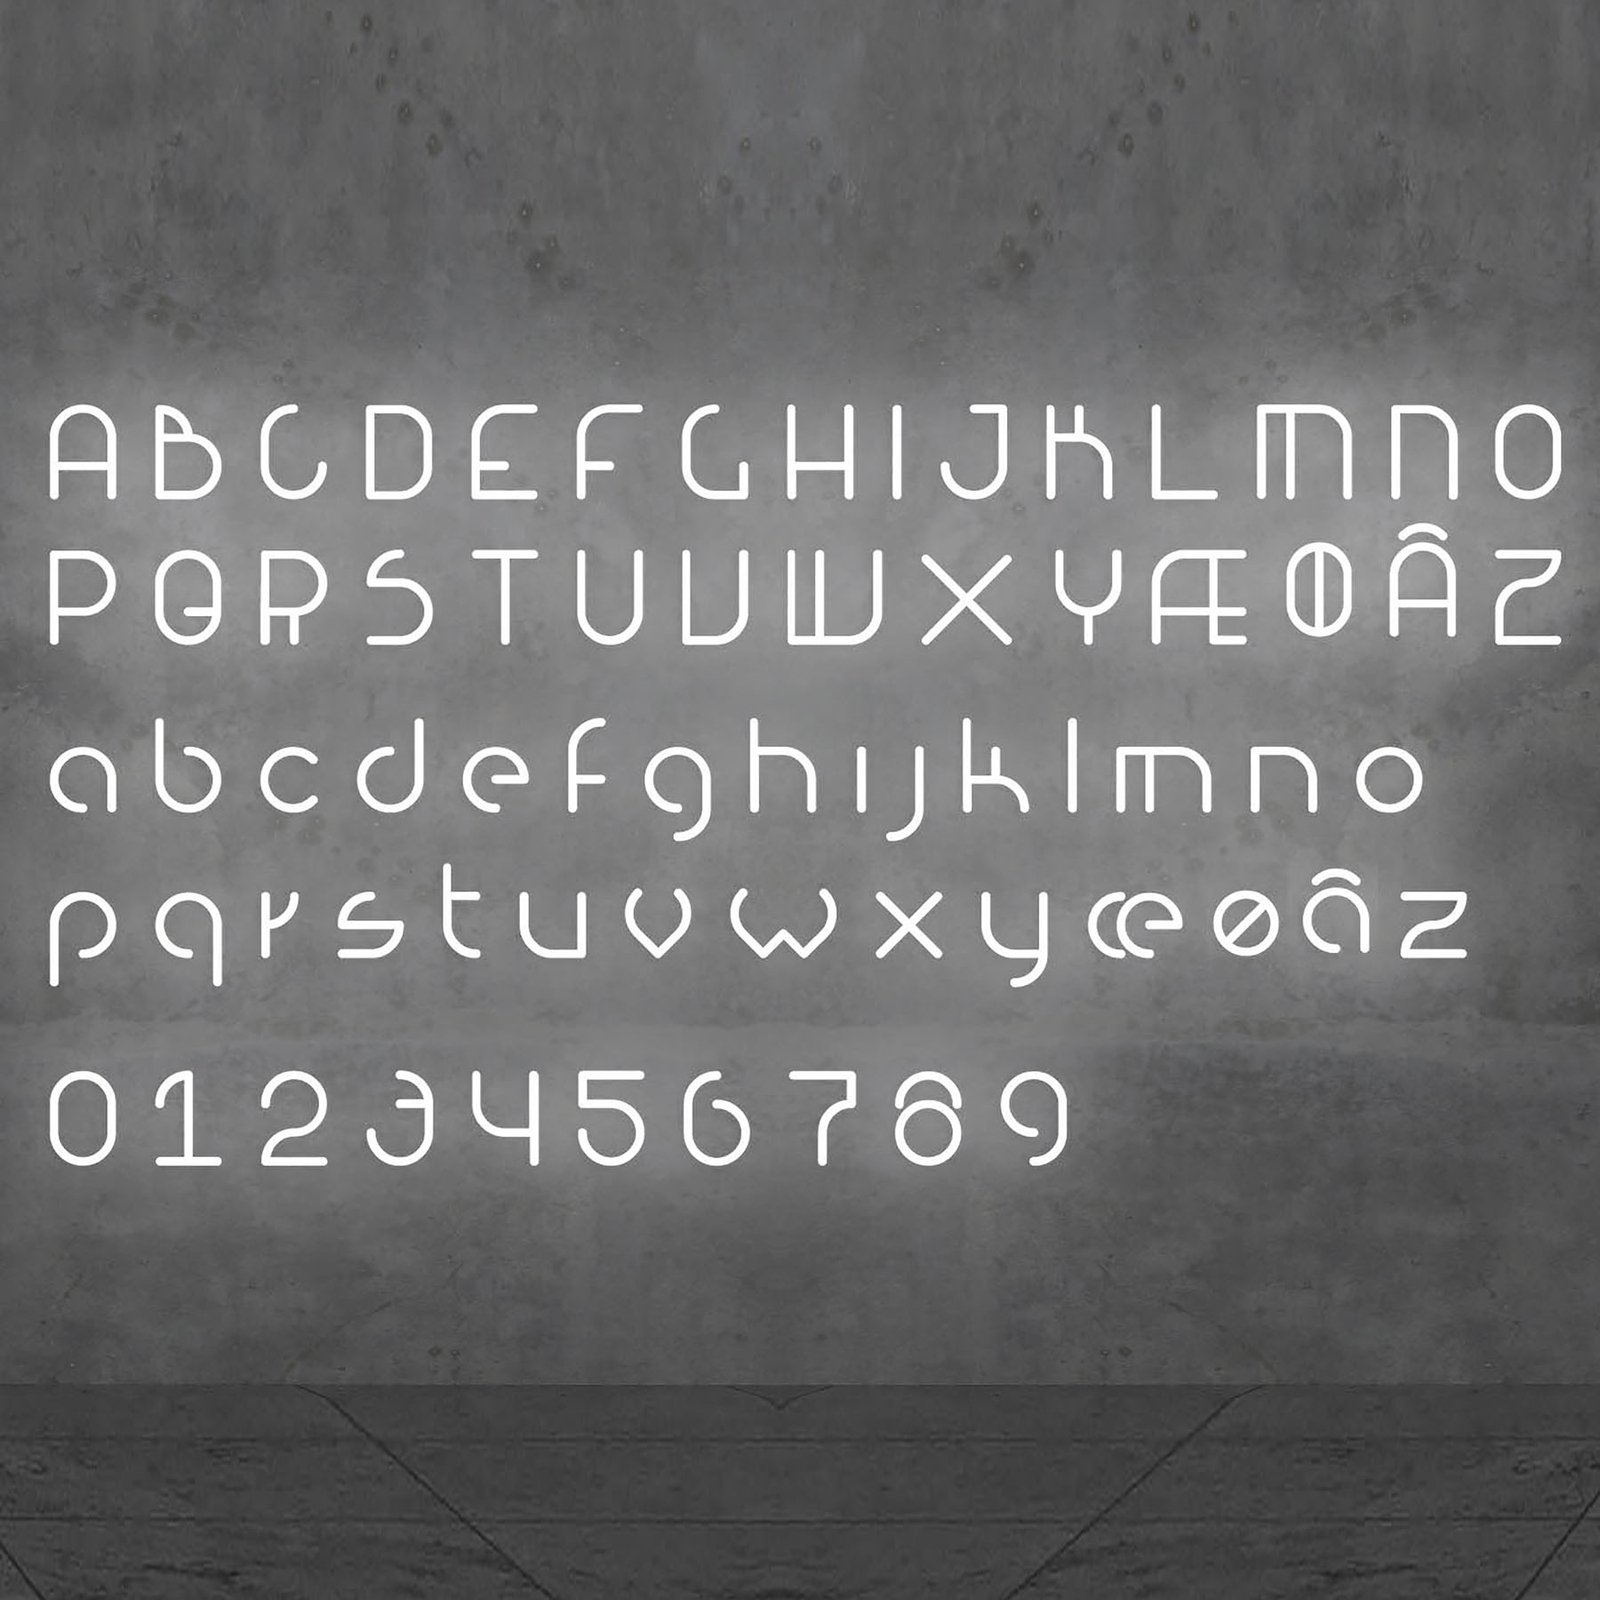 Artemide Alphabet of Light væg, lille bogstav n